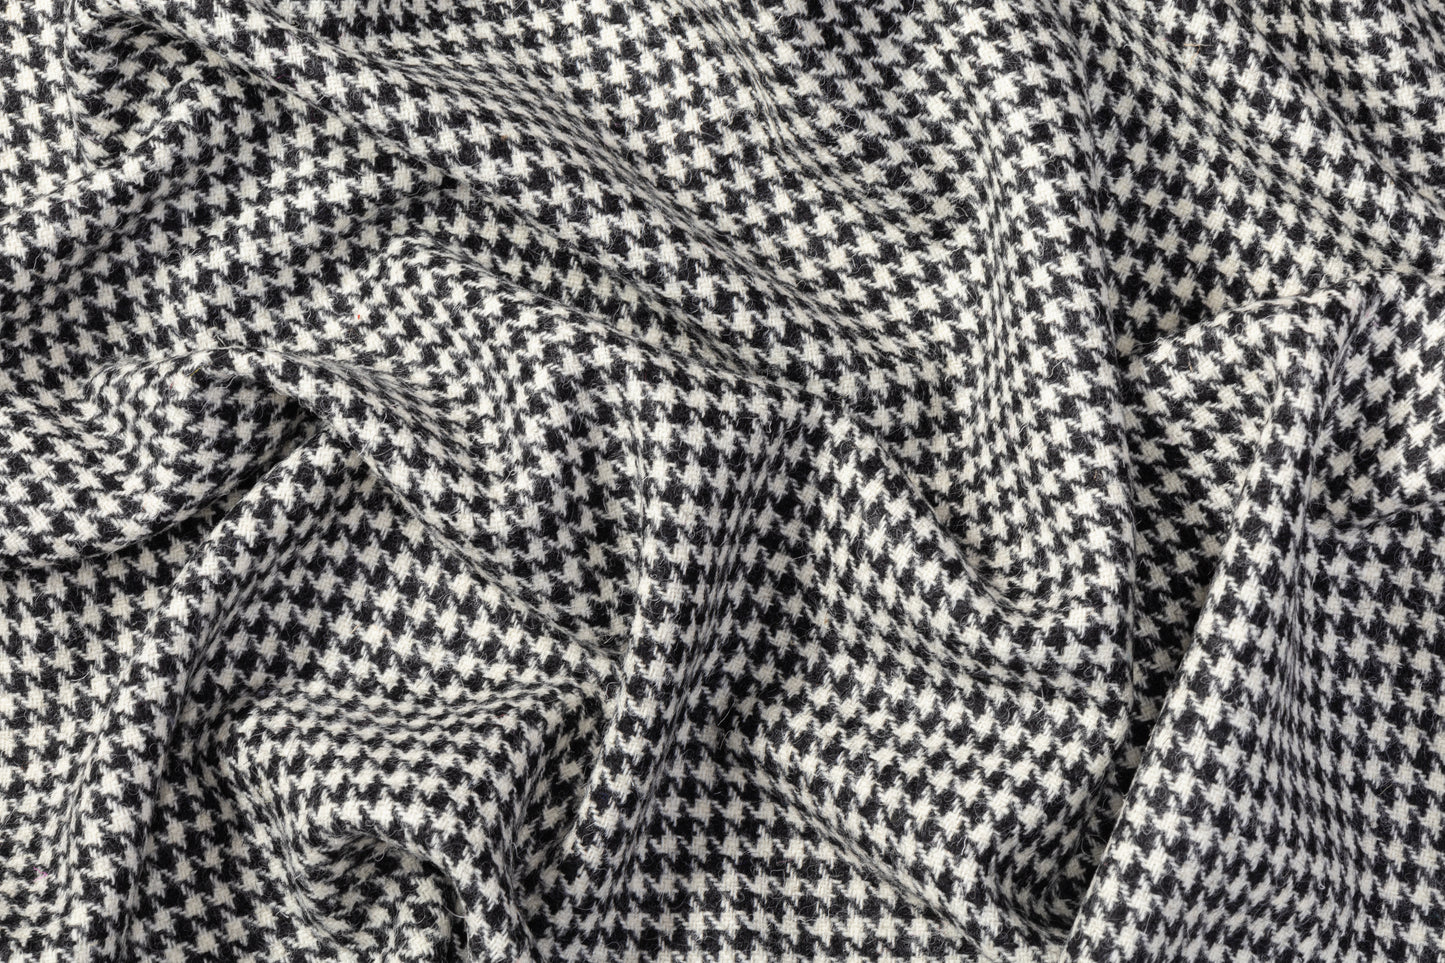 Houndstooth Wool Tweed Coating - Black / White